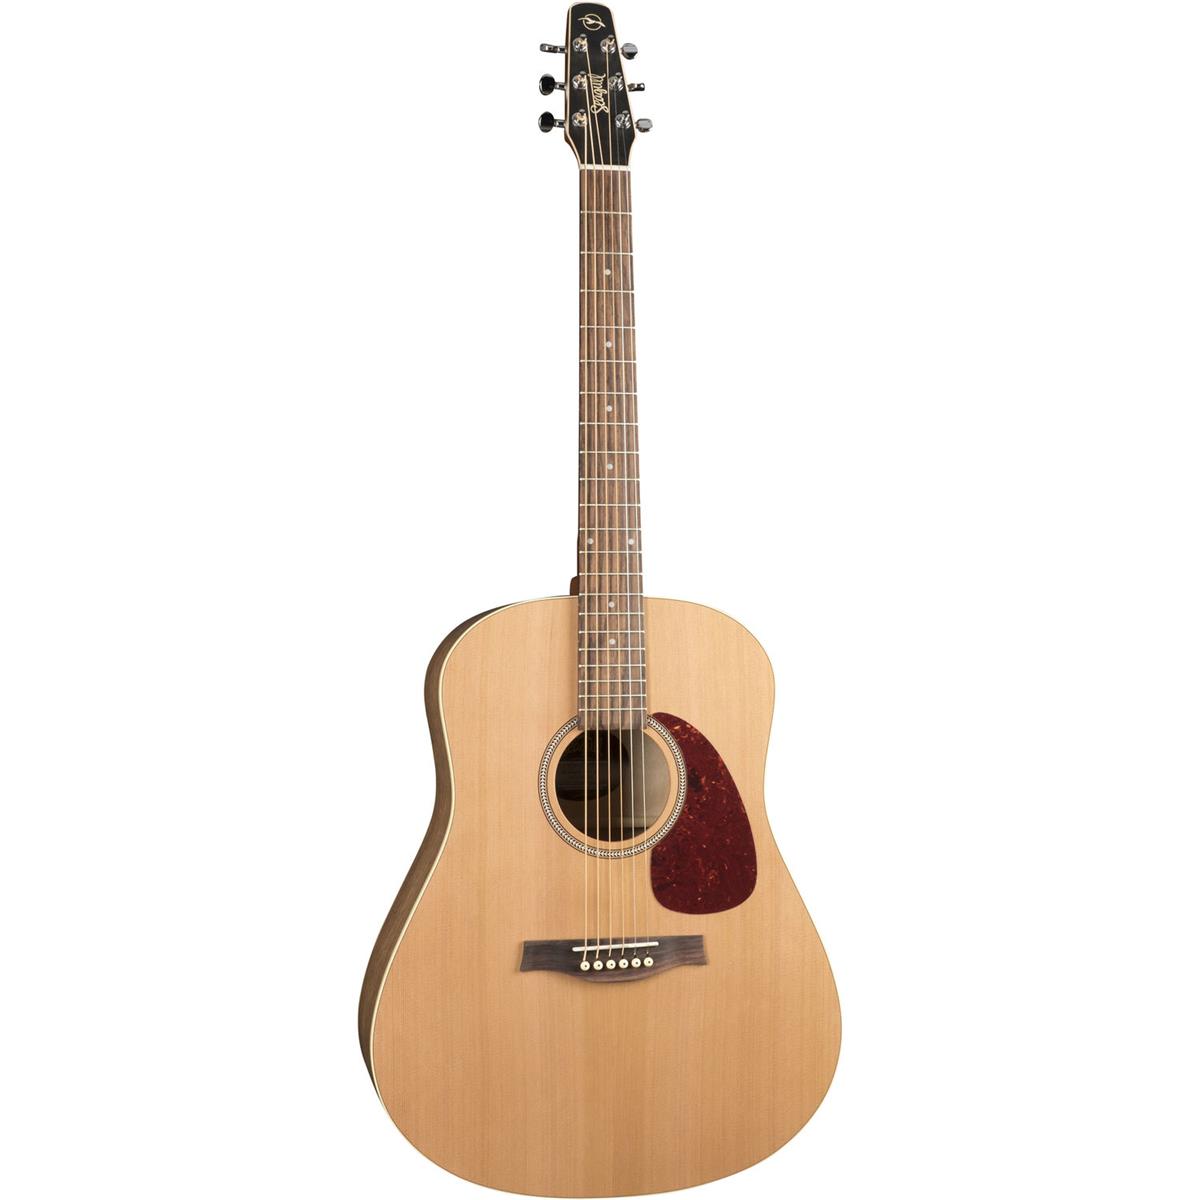 Seagull S6 Cedar Original Slim Acoustic Guitar, Natural Semi-Gloss -  046409